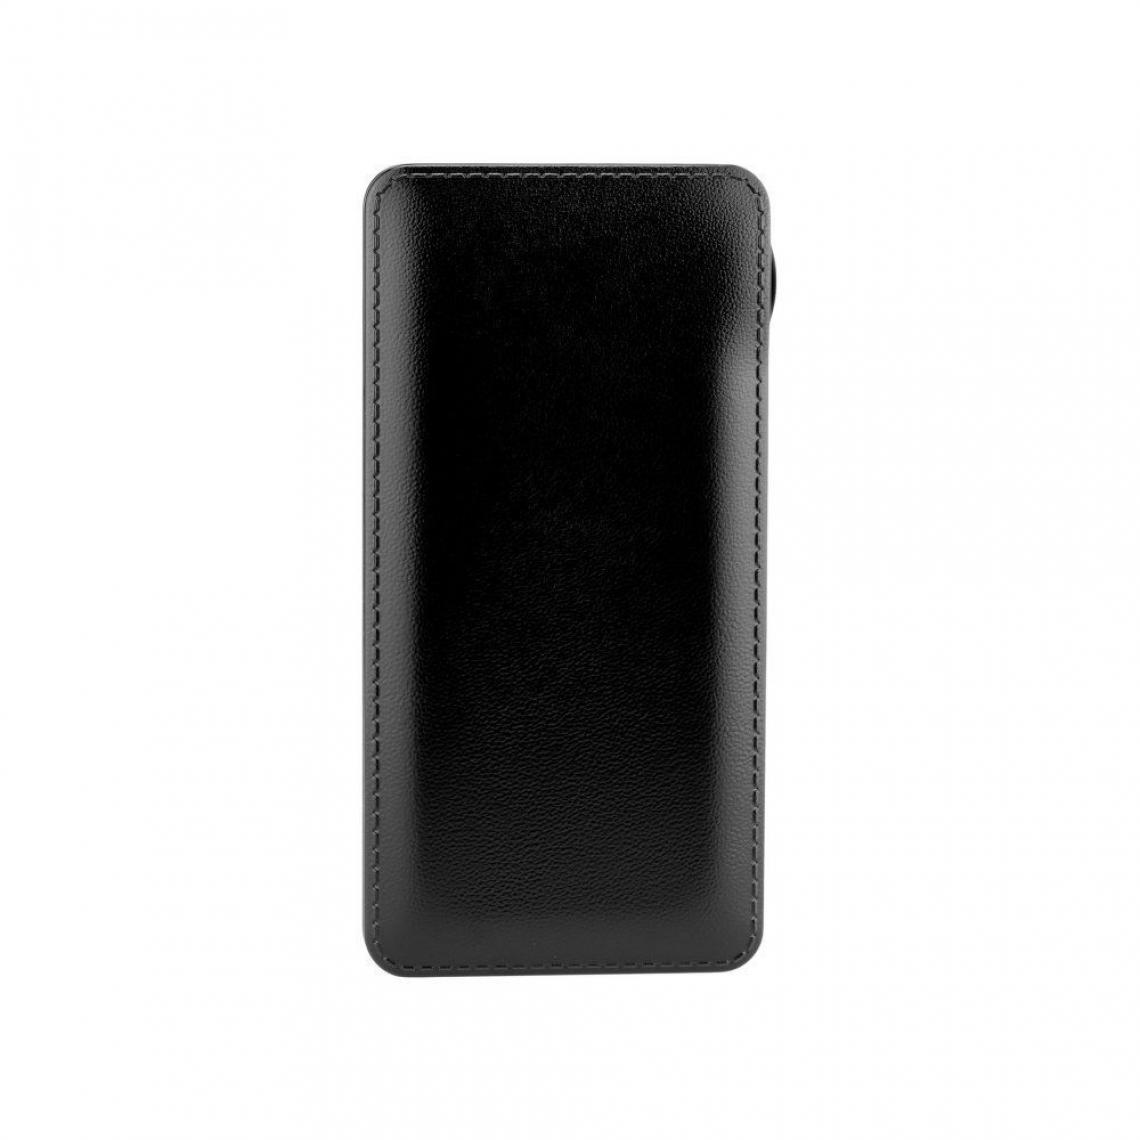 Ozzzo - Chargeur batterie externe 10000mAh powerbank ozzzo noir pour Allcall S10 - Autres accessoires smartphone